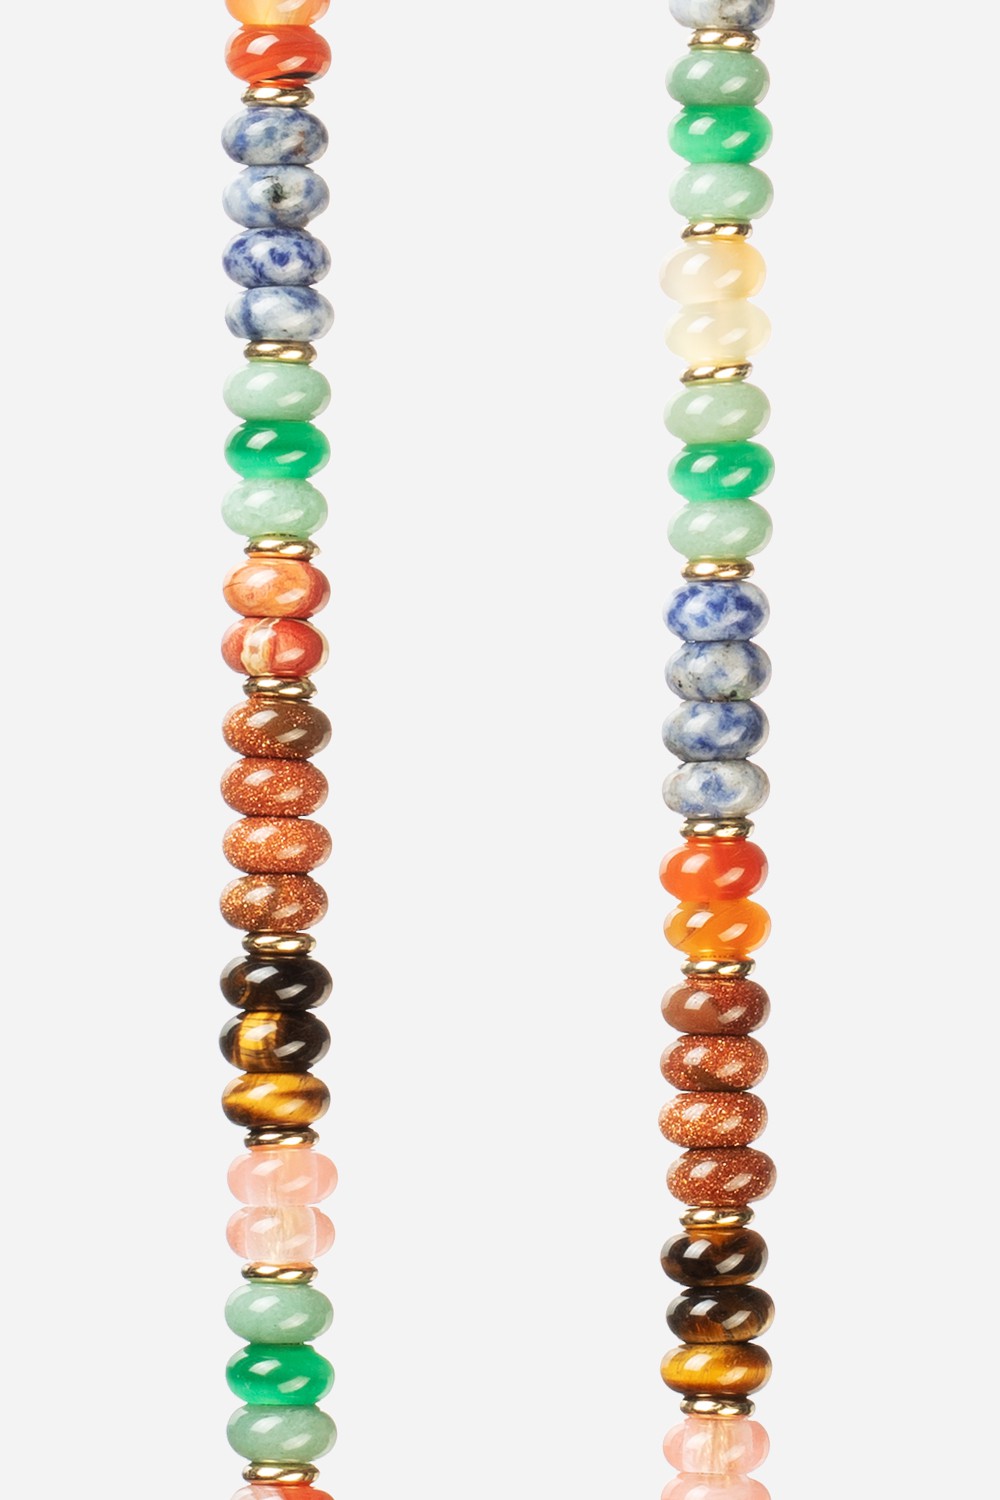 Chaine Longue Joyce Multicolore 120 cm